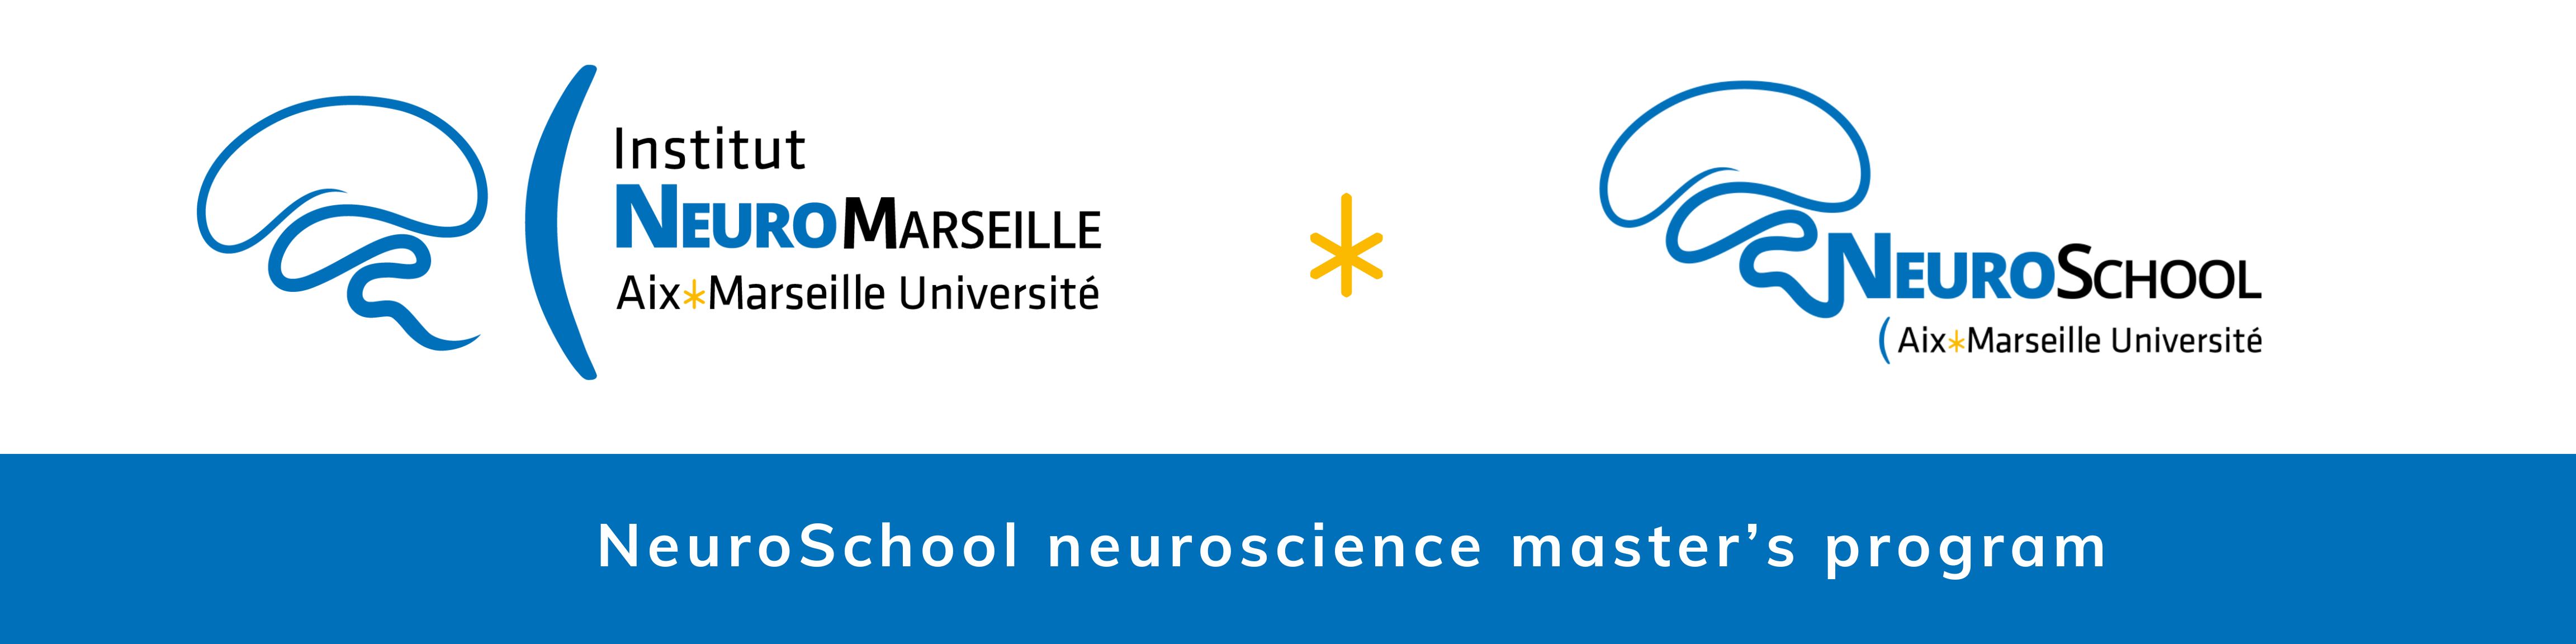 logos NeuroMarseille NeuroSchool